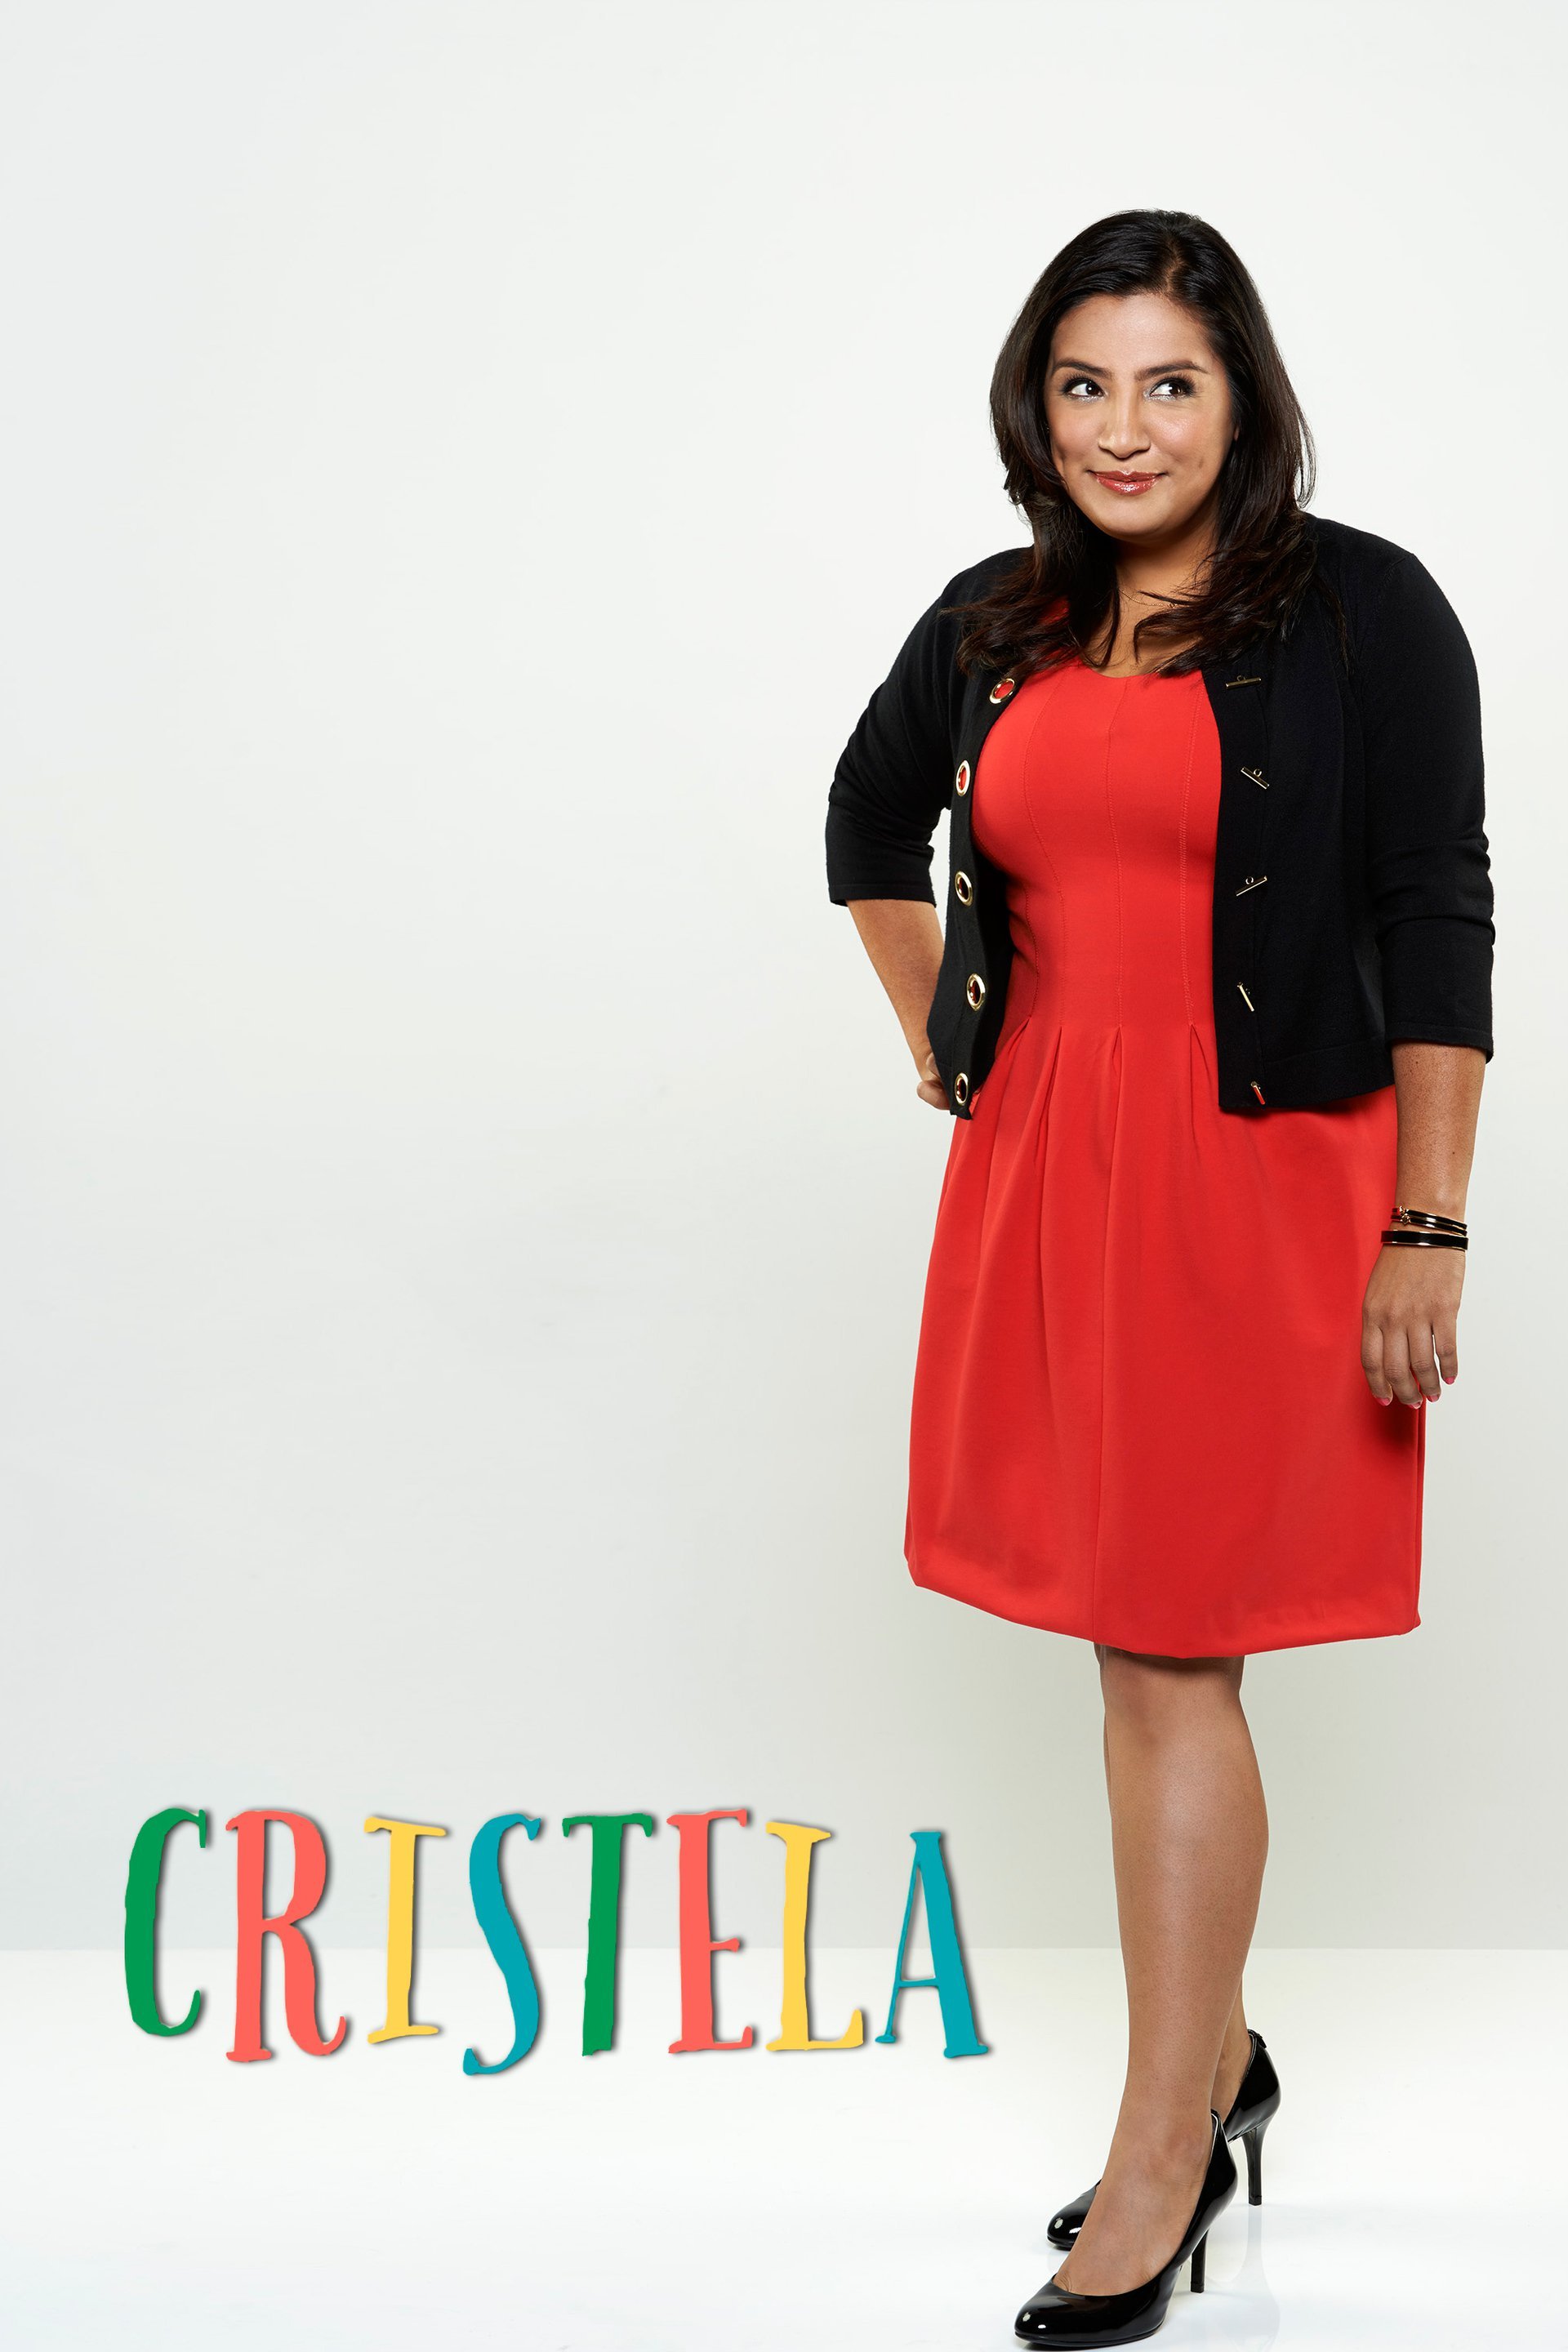 L'affiche du film Cristela